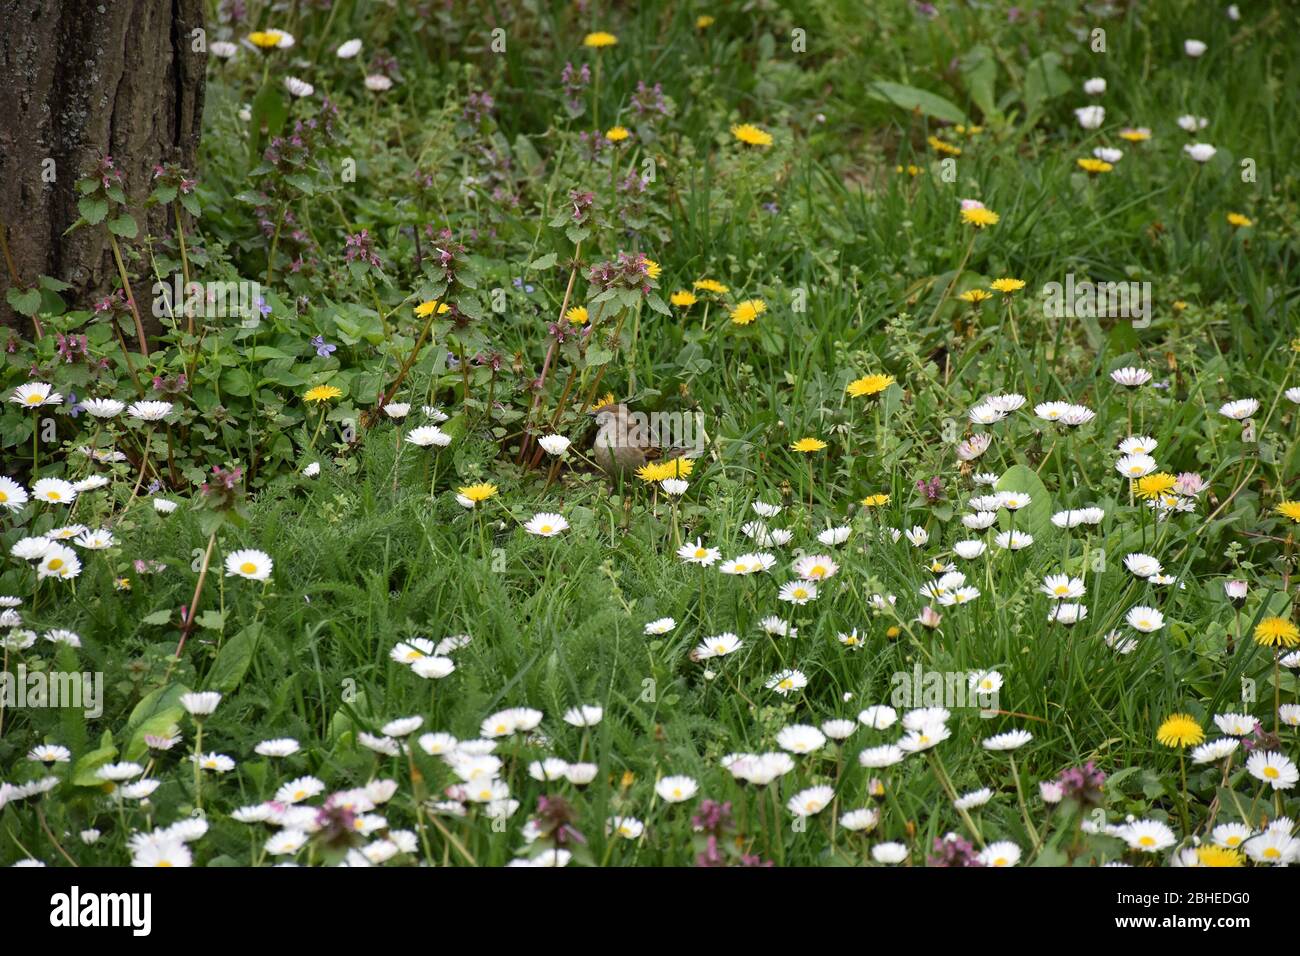 Kleiner kleiner kleiner Vogel, ein Spatz landete auf einer Wiese voller bunter Feldblumen Stockfoto